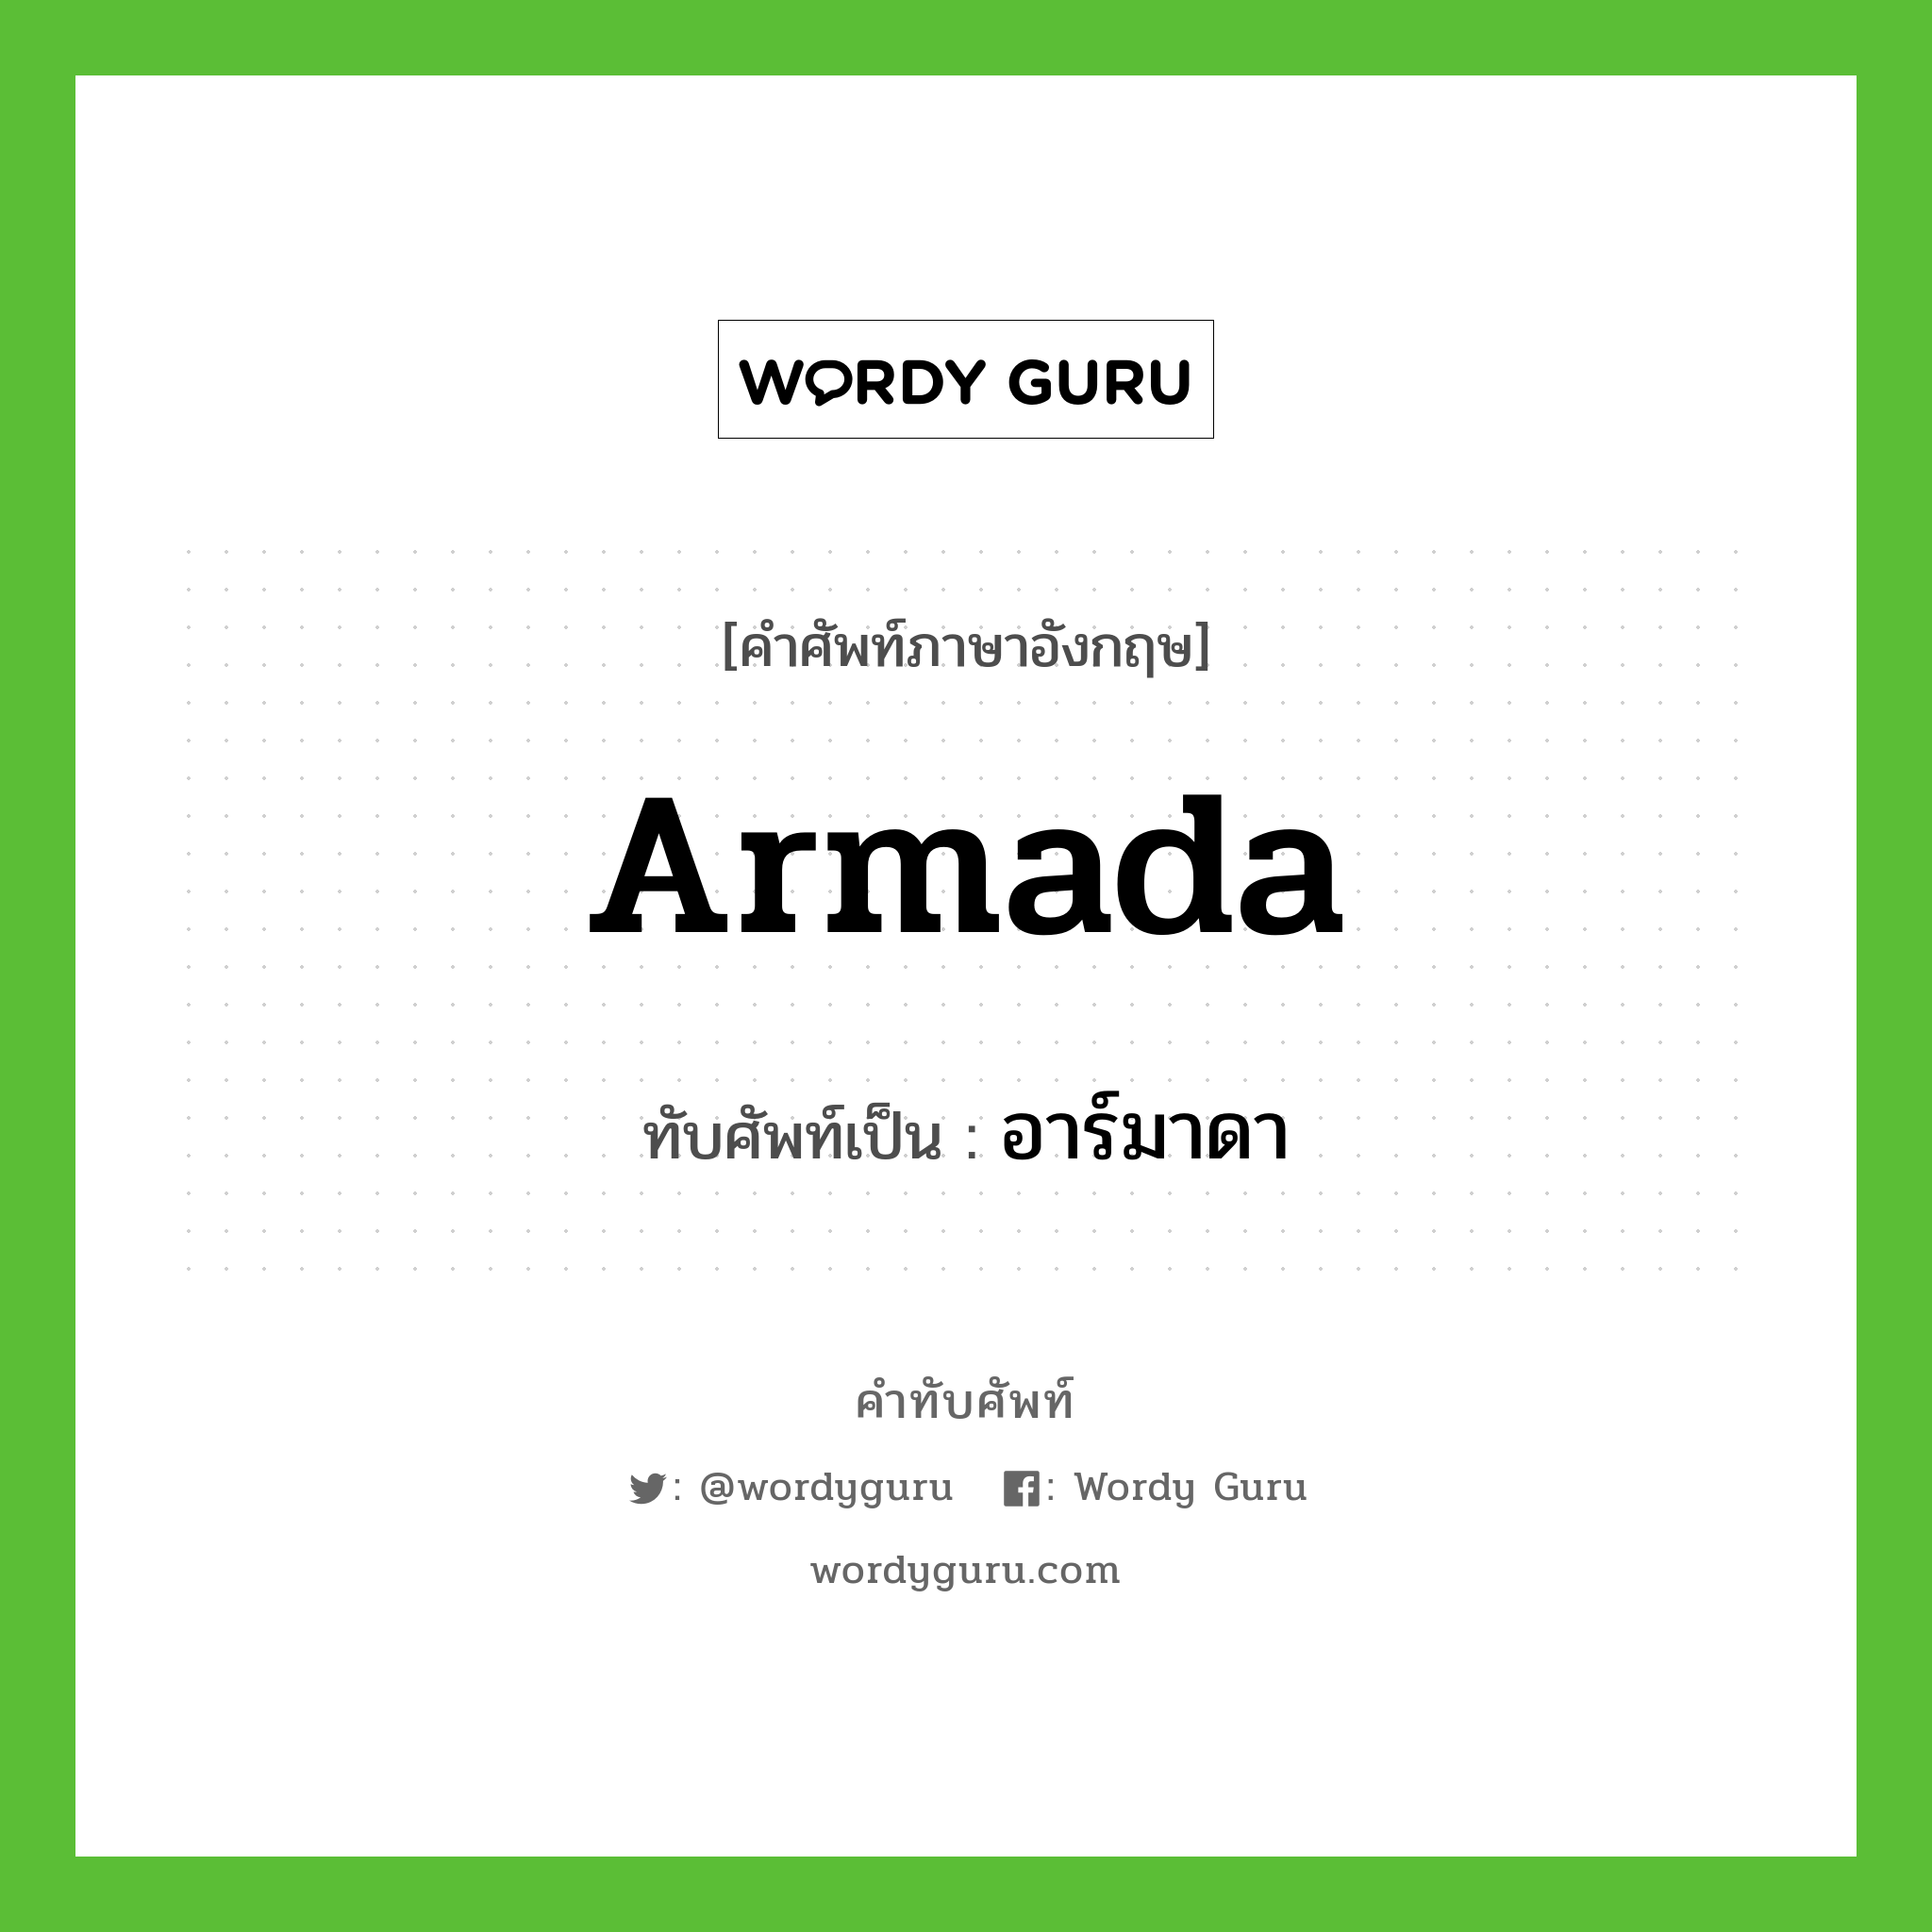 อาร์มาดา เขียนอย่างไร?, คำศัพท์ภาษาอังกฤษ อาร์มาดา ทับศัพท์เป็น Armada